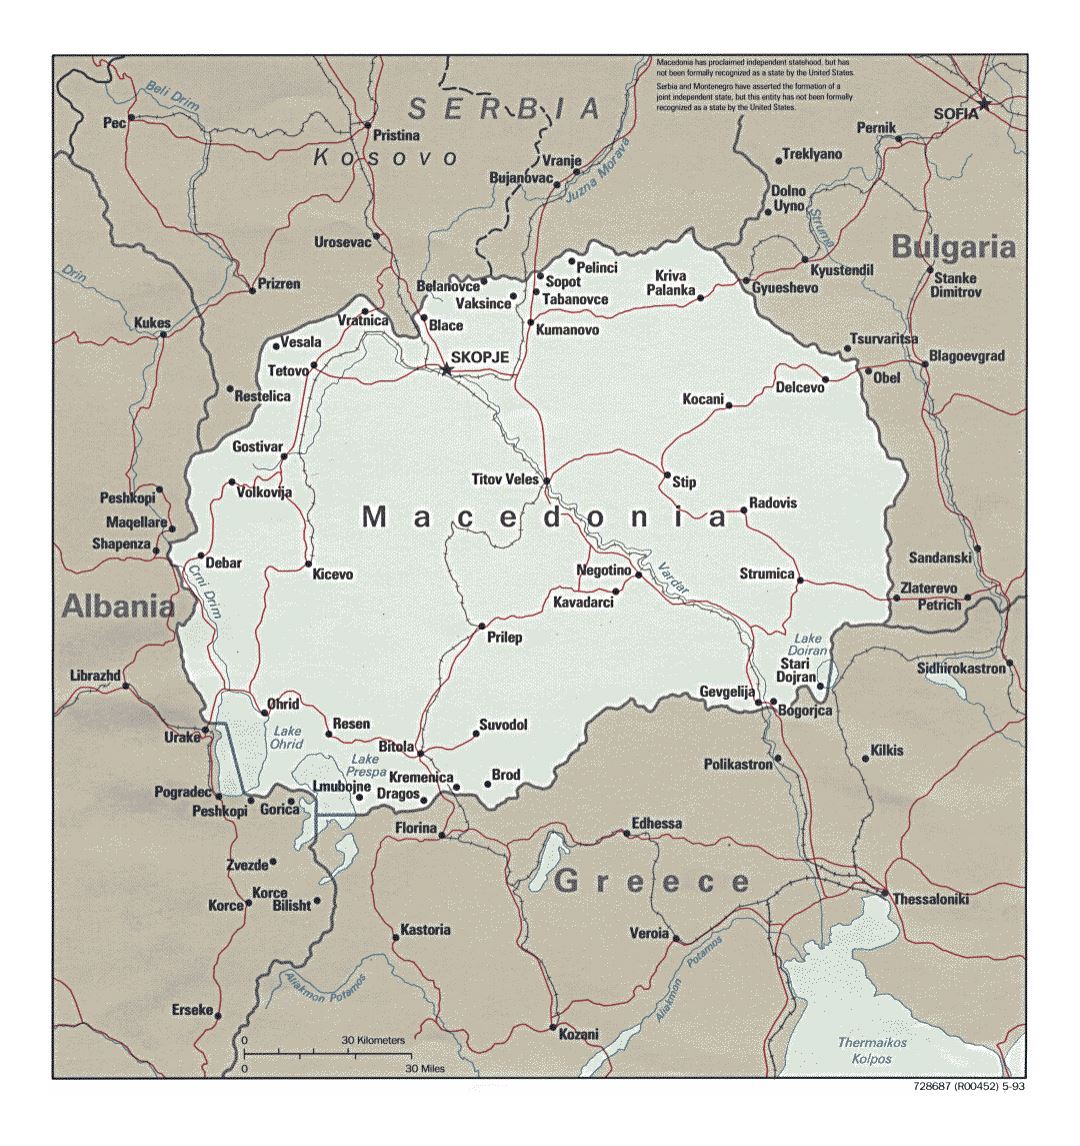 Detallado mapa político de Macedonia con carreteras y principales ciudades - 1993